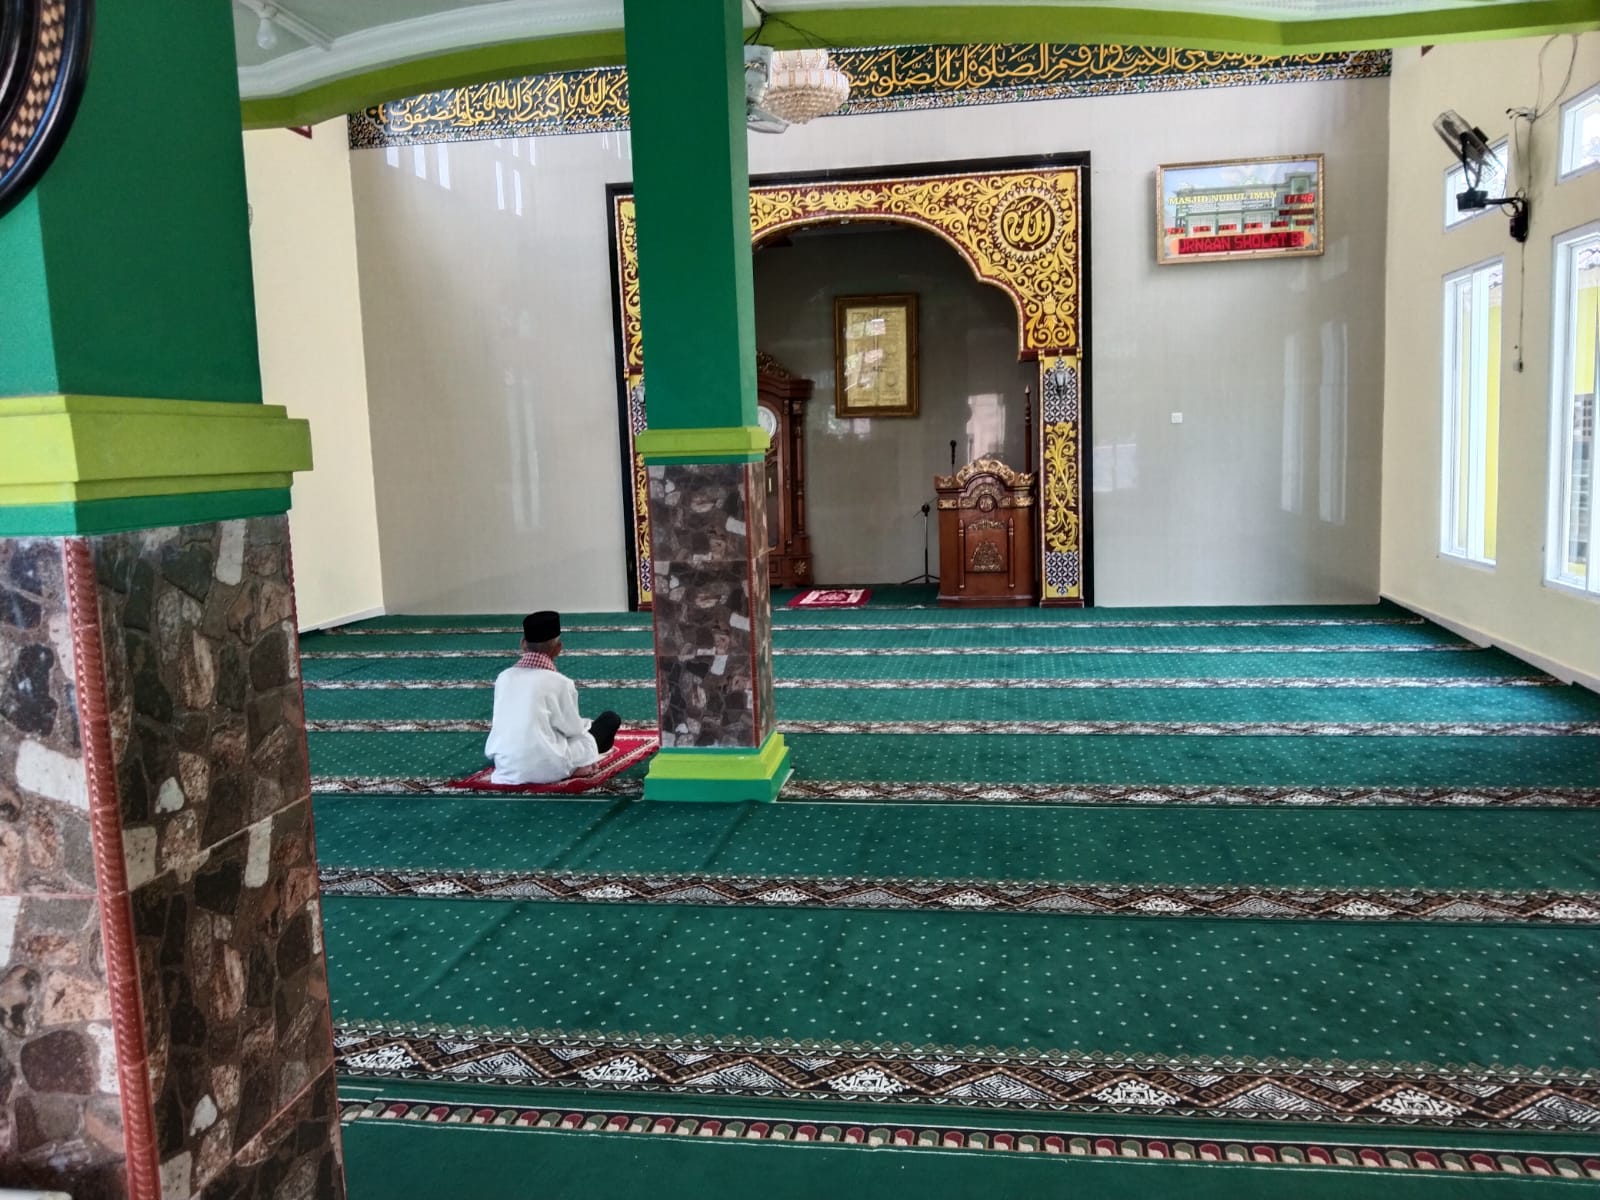 Jual karpet masjid bandar lampung